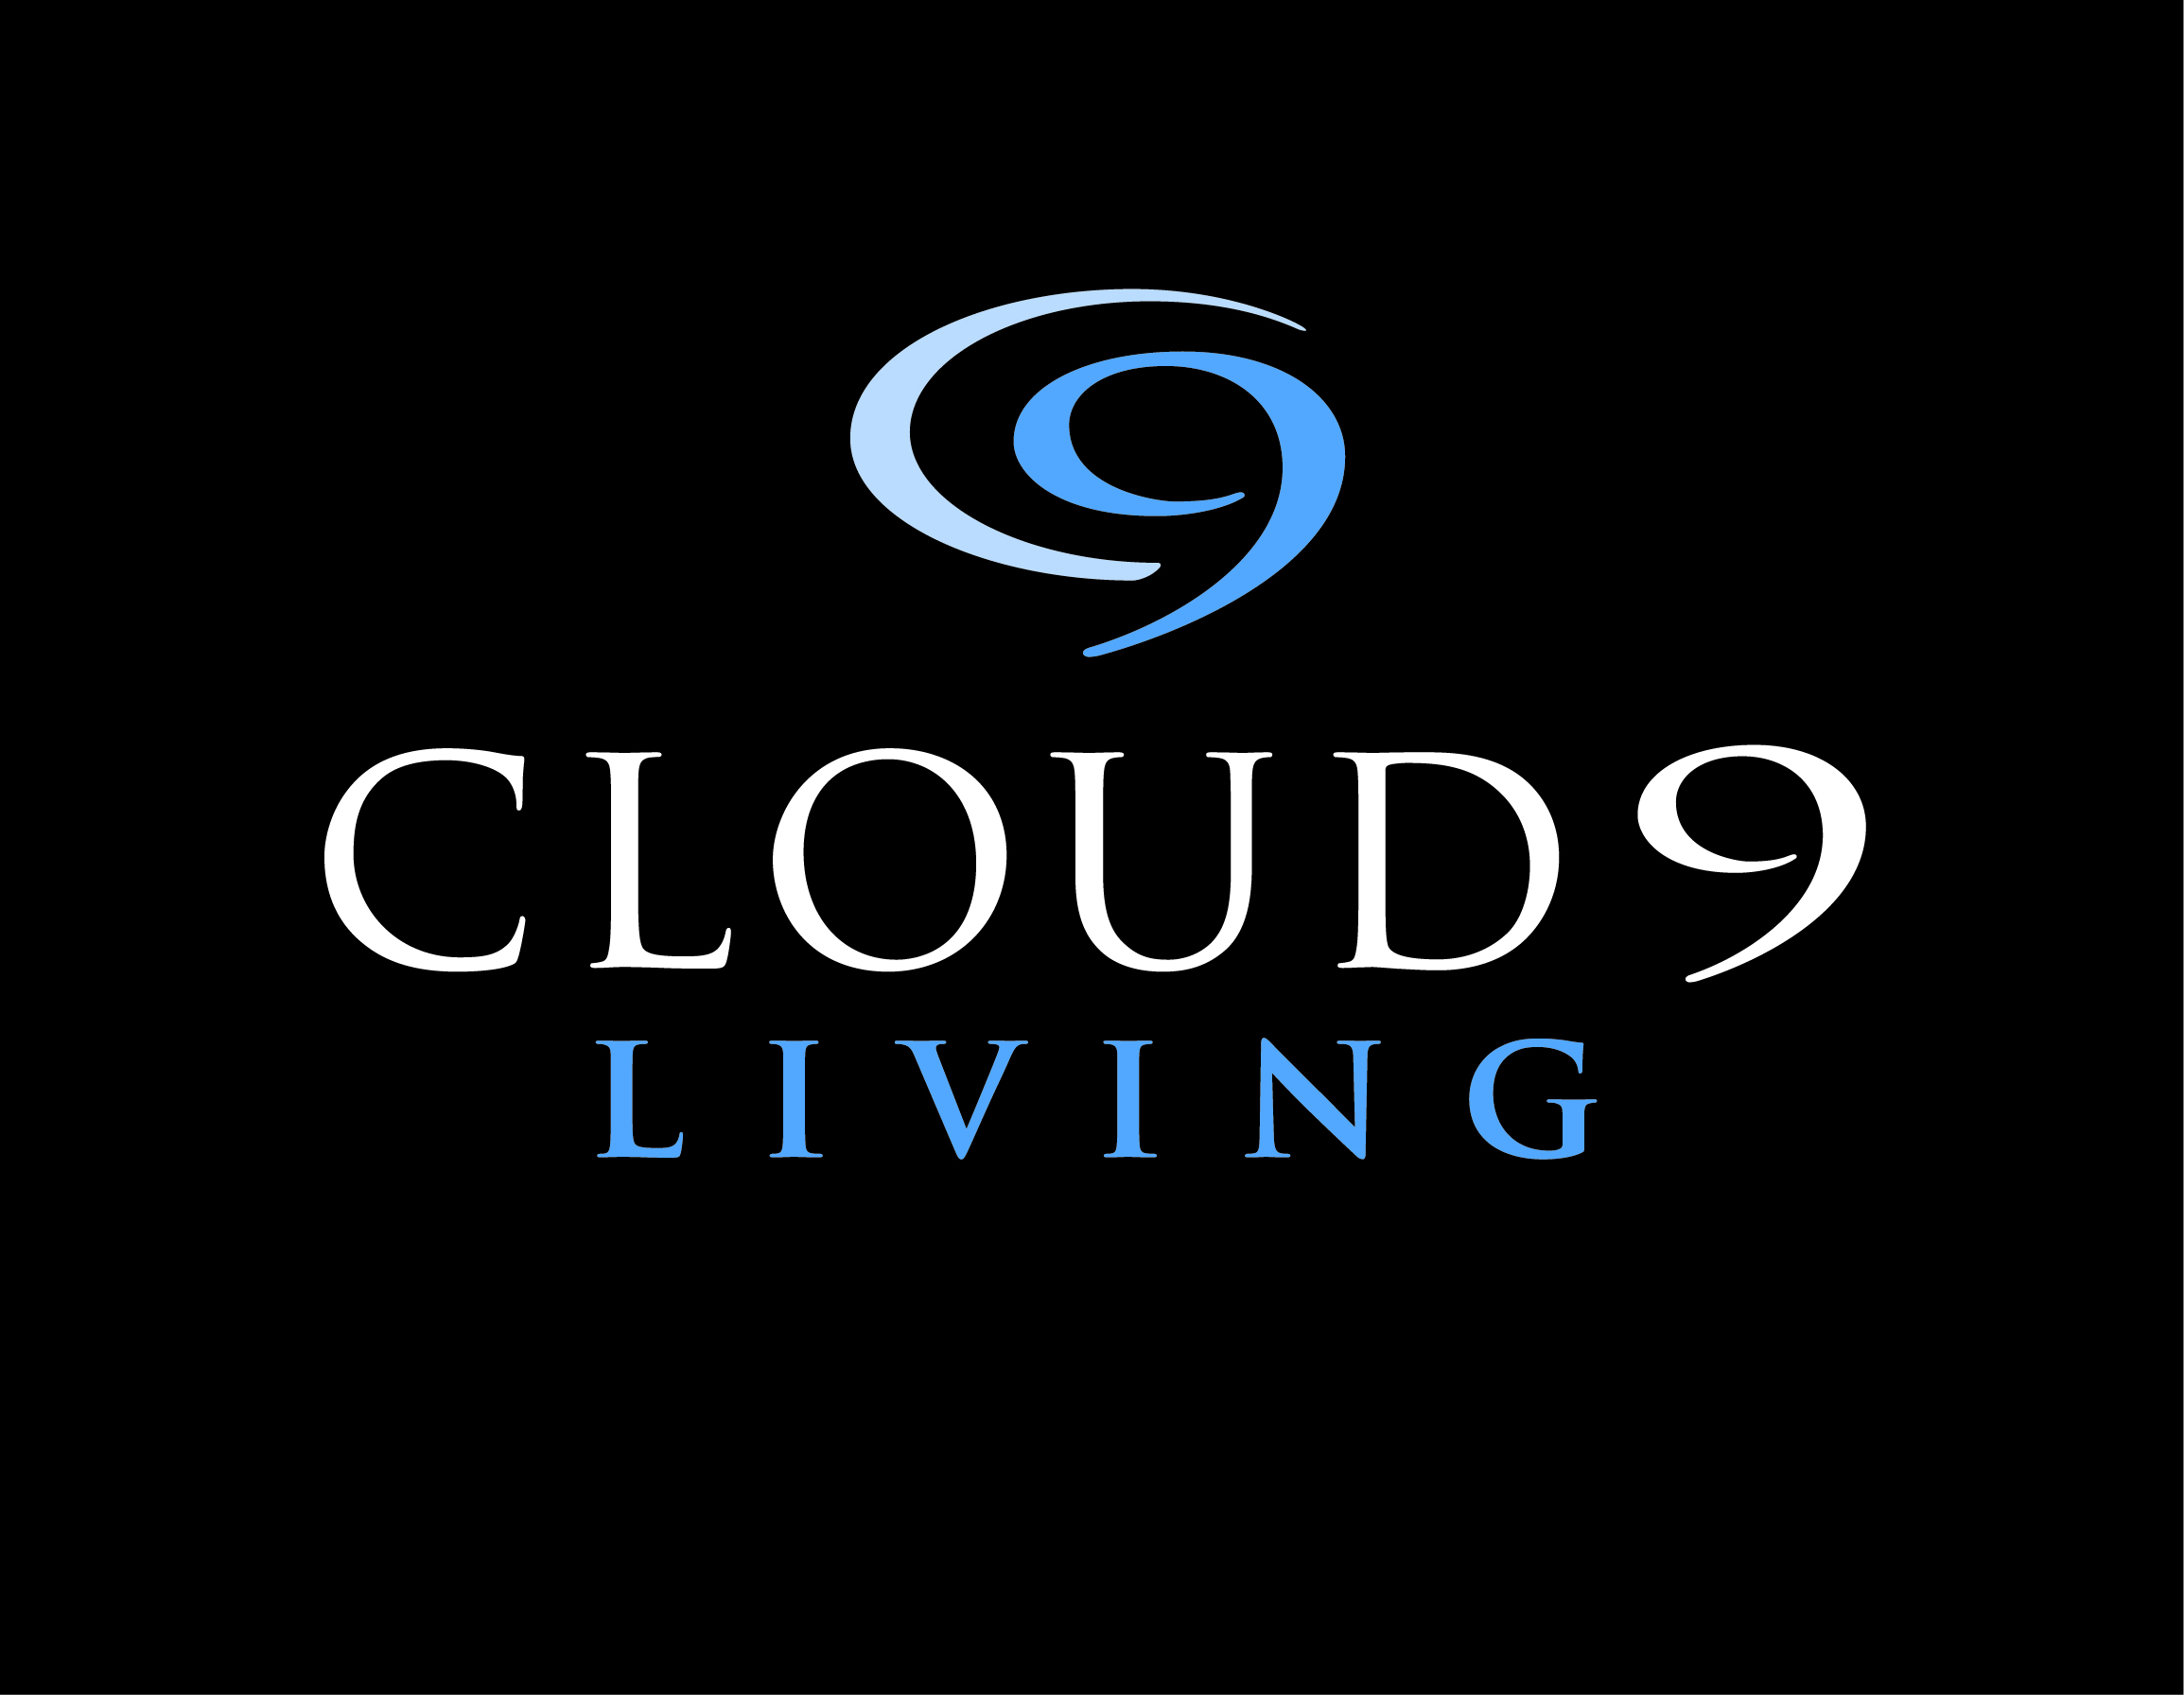 Cloud 9 Living